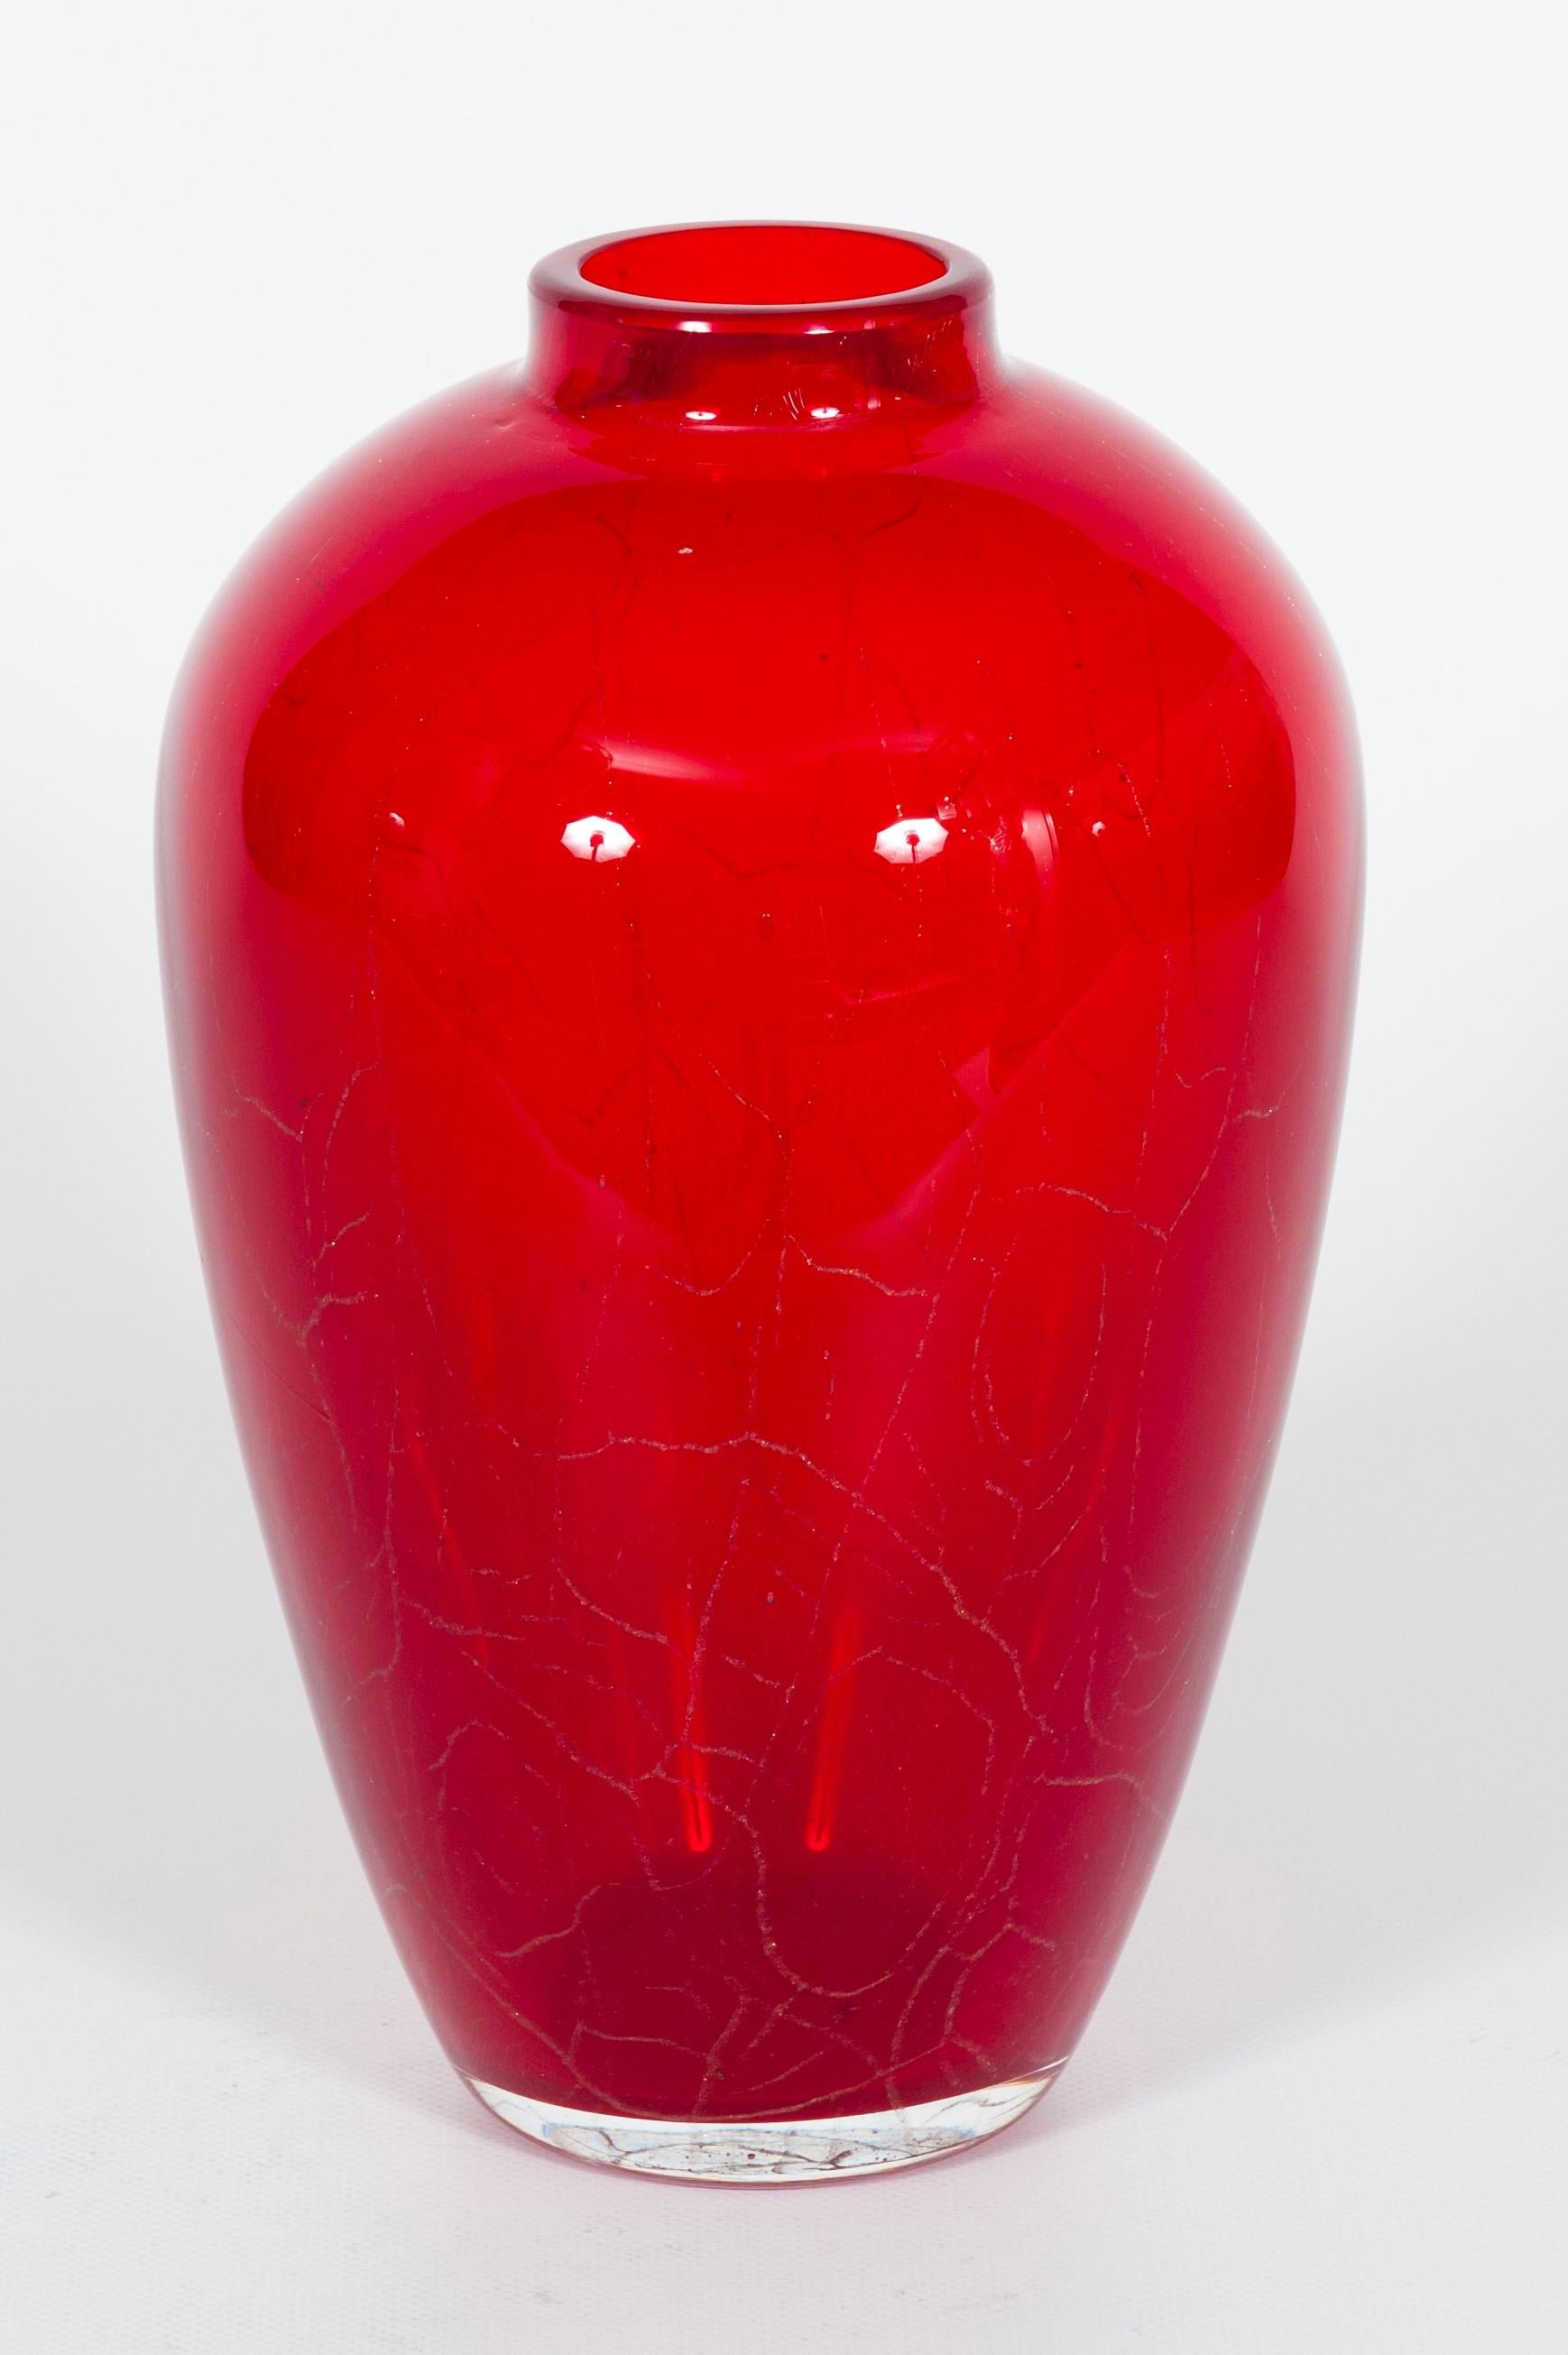 Vintage vase en verre de Murano rouge avec or Murano attribué à Seguso 1950s.
Il s'agit d'un vase de conception italienne exceptionnelle, caractérisé par une forme harmonieuse et délicate, une couleur rouge rubis intense et des bandes submergées